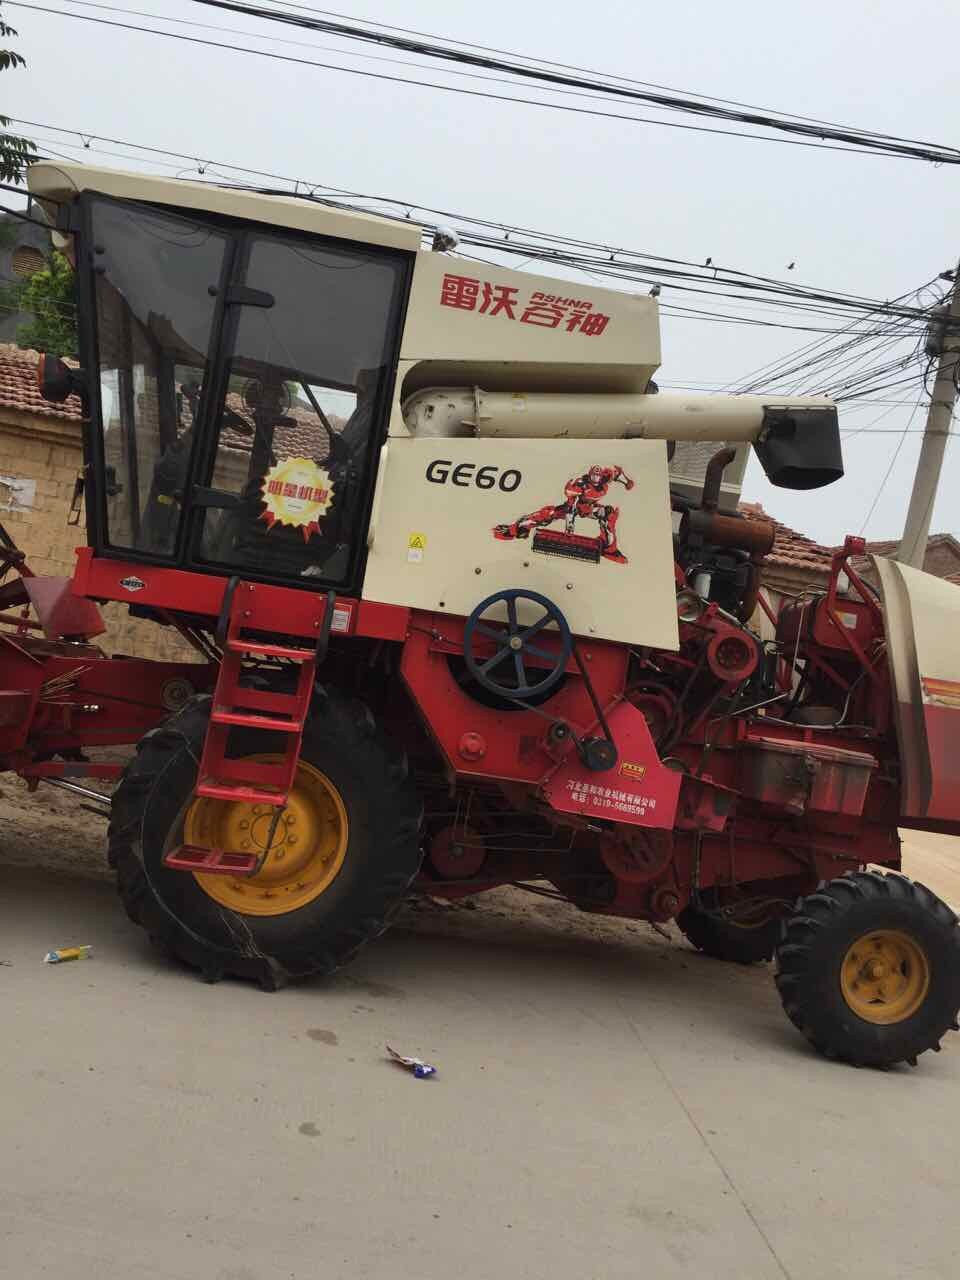 出售2015年雷沃GE60小麦收割机